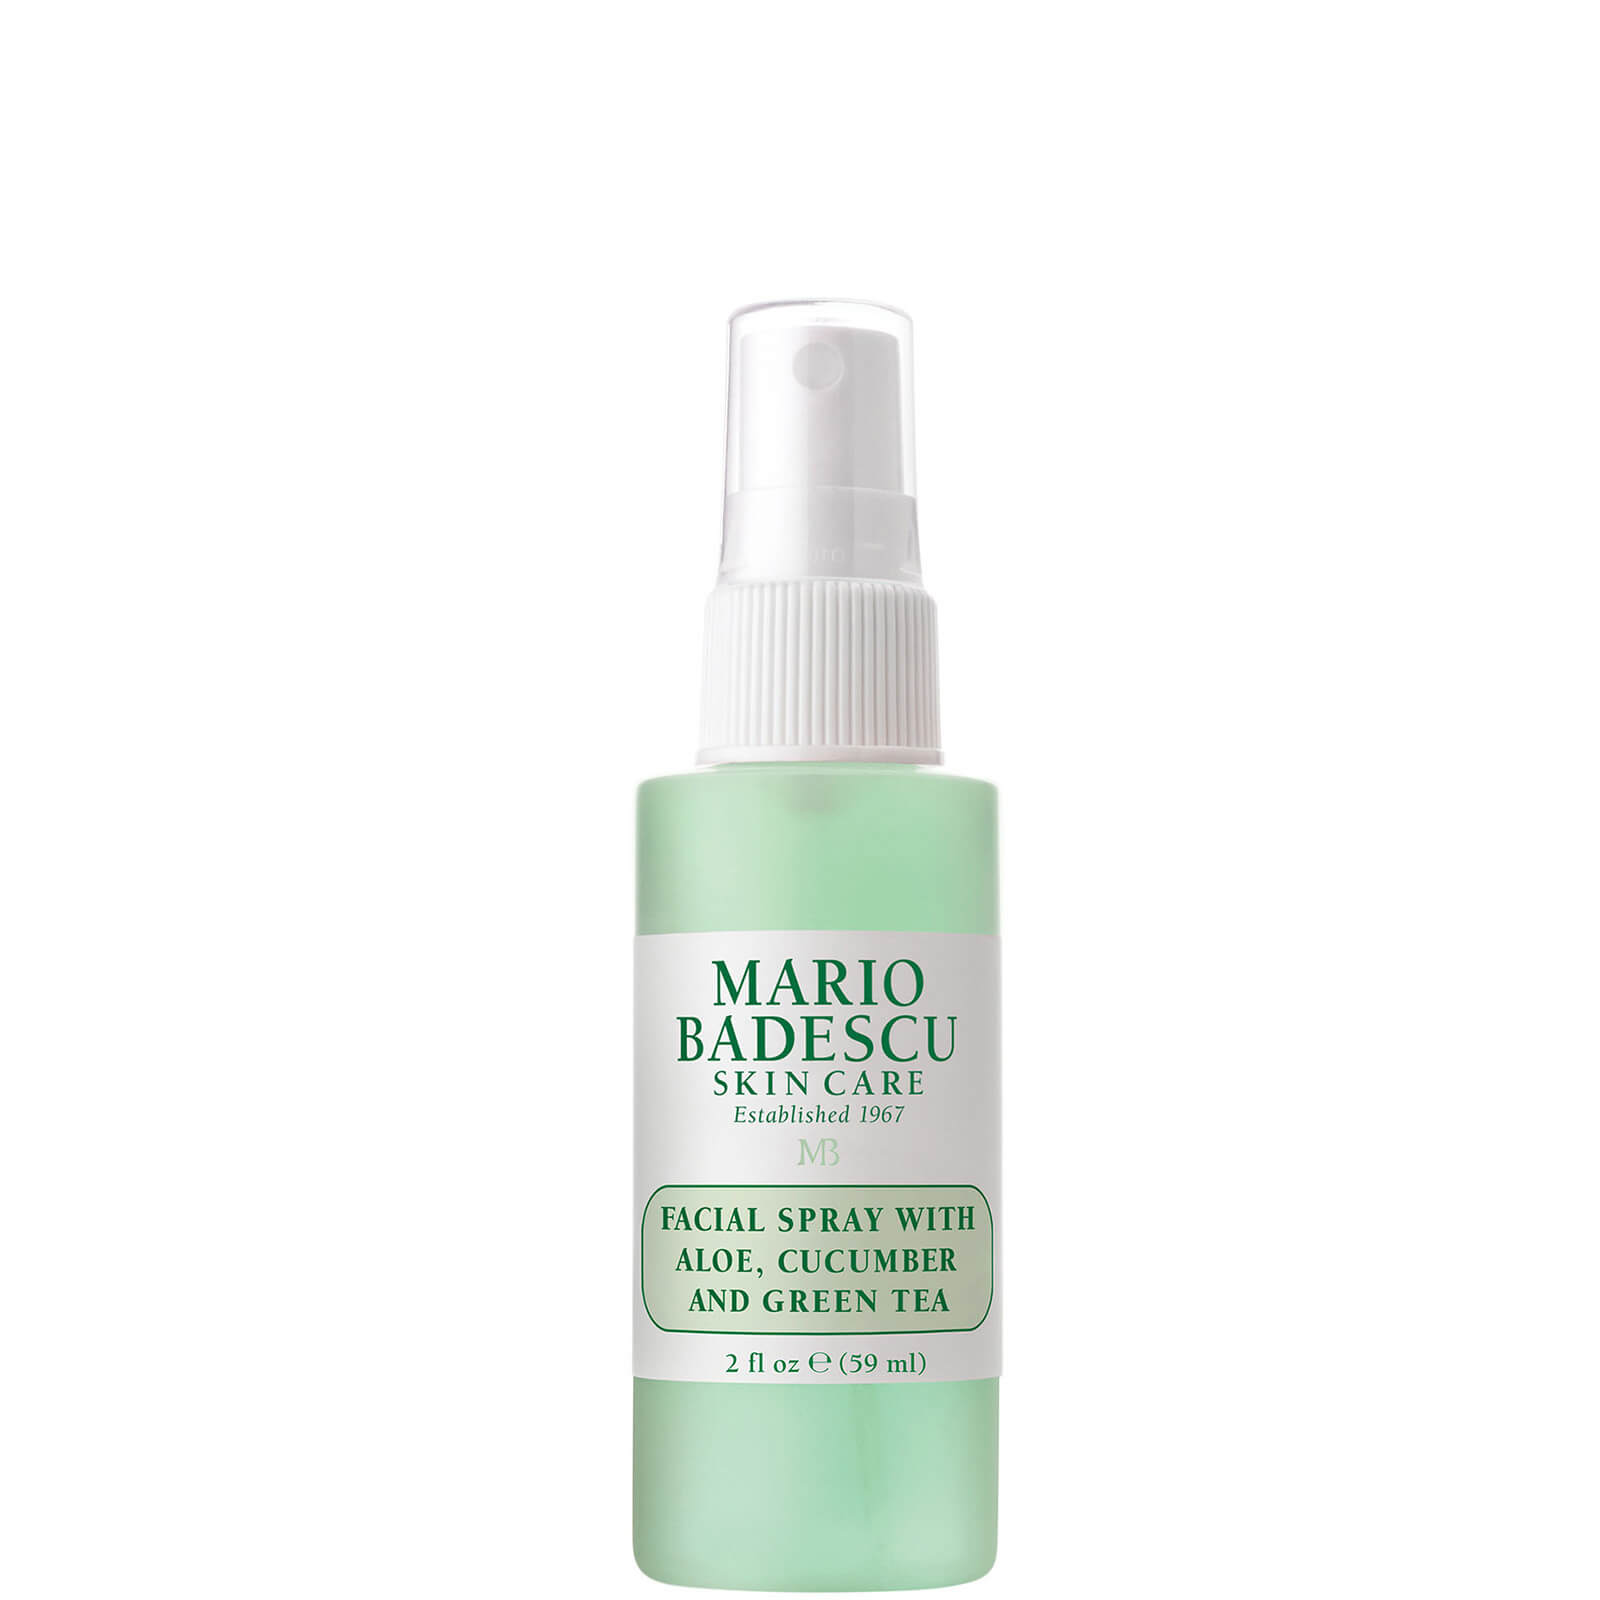 Mario Badescu Facial Spray With Aloe, Cucumber And Green Tea - 59ml